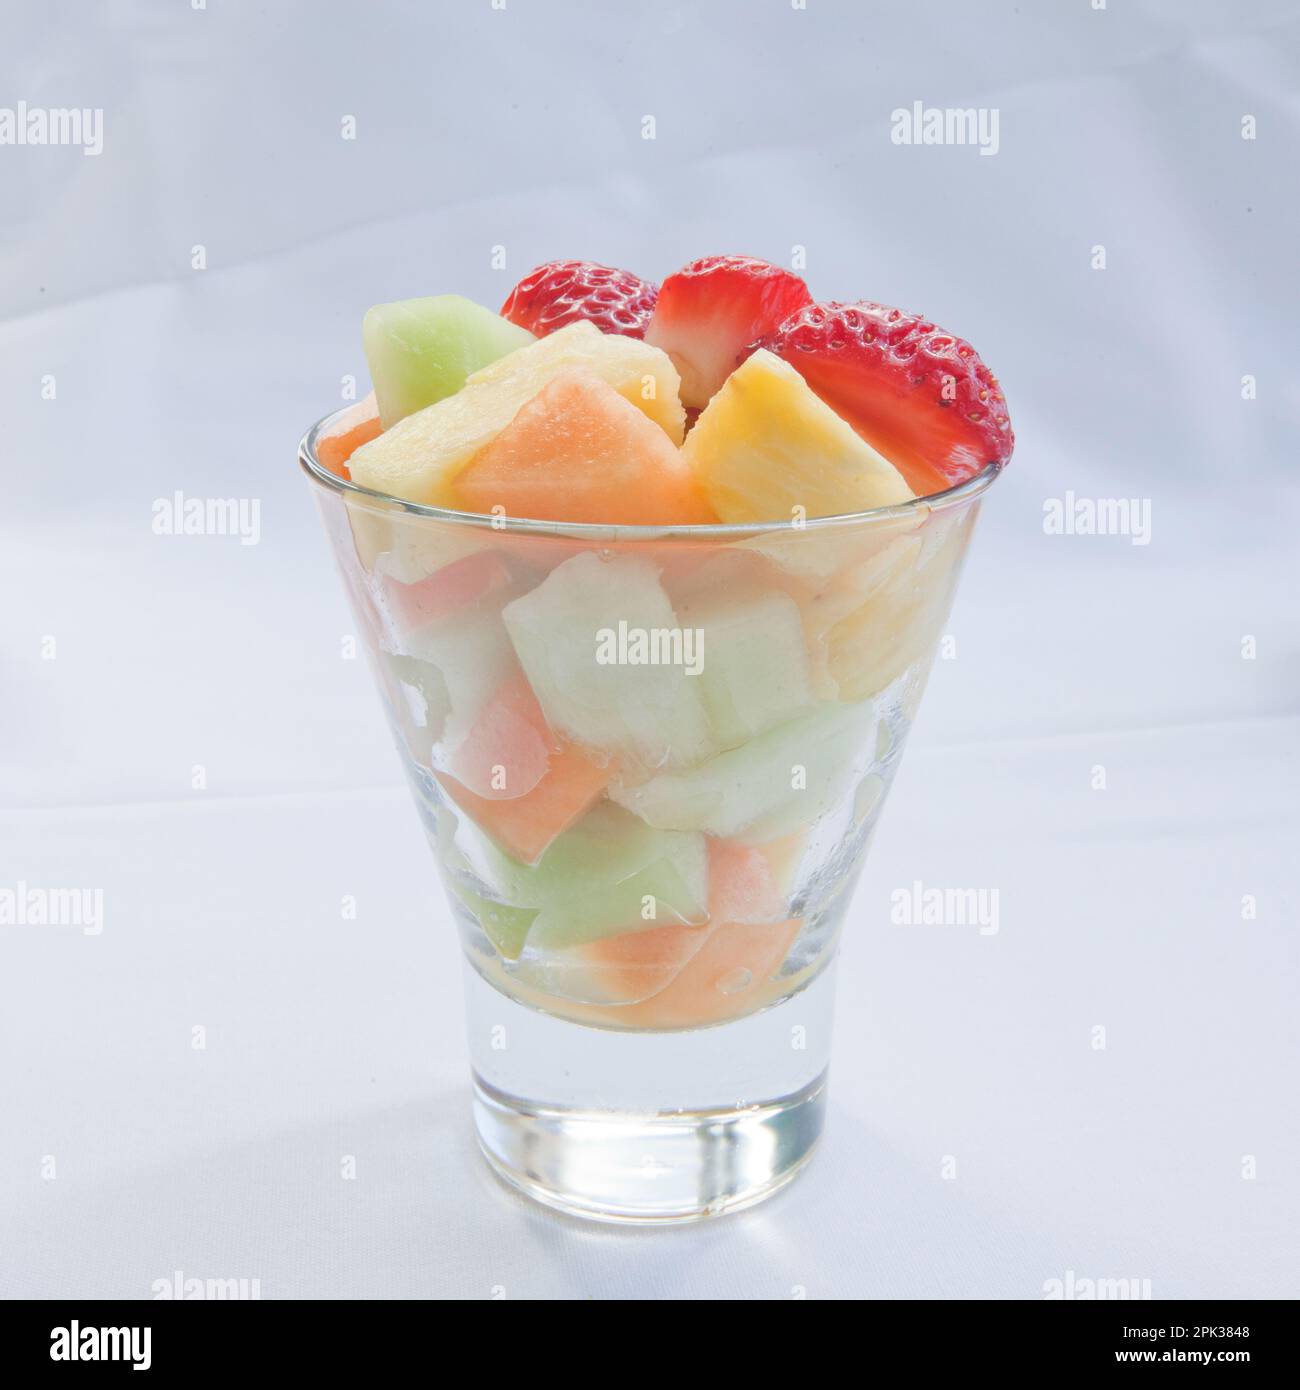 Frischer Obstsalat mit Erdbeeren, Melonen aus Cantaloupe und Honigtau sowie Ananasstücke in einem durchsichtigen Glasbecher auf weißem Leinenhintergrund Stockfoto